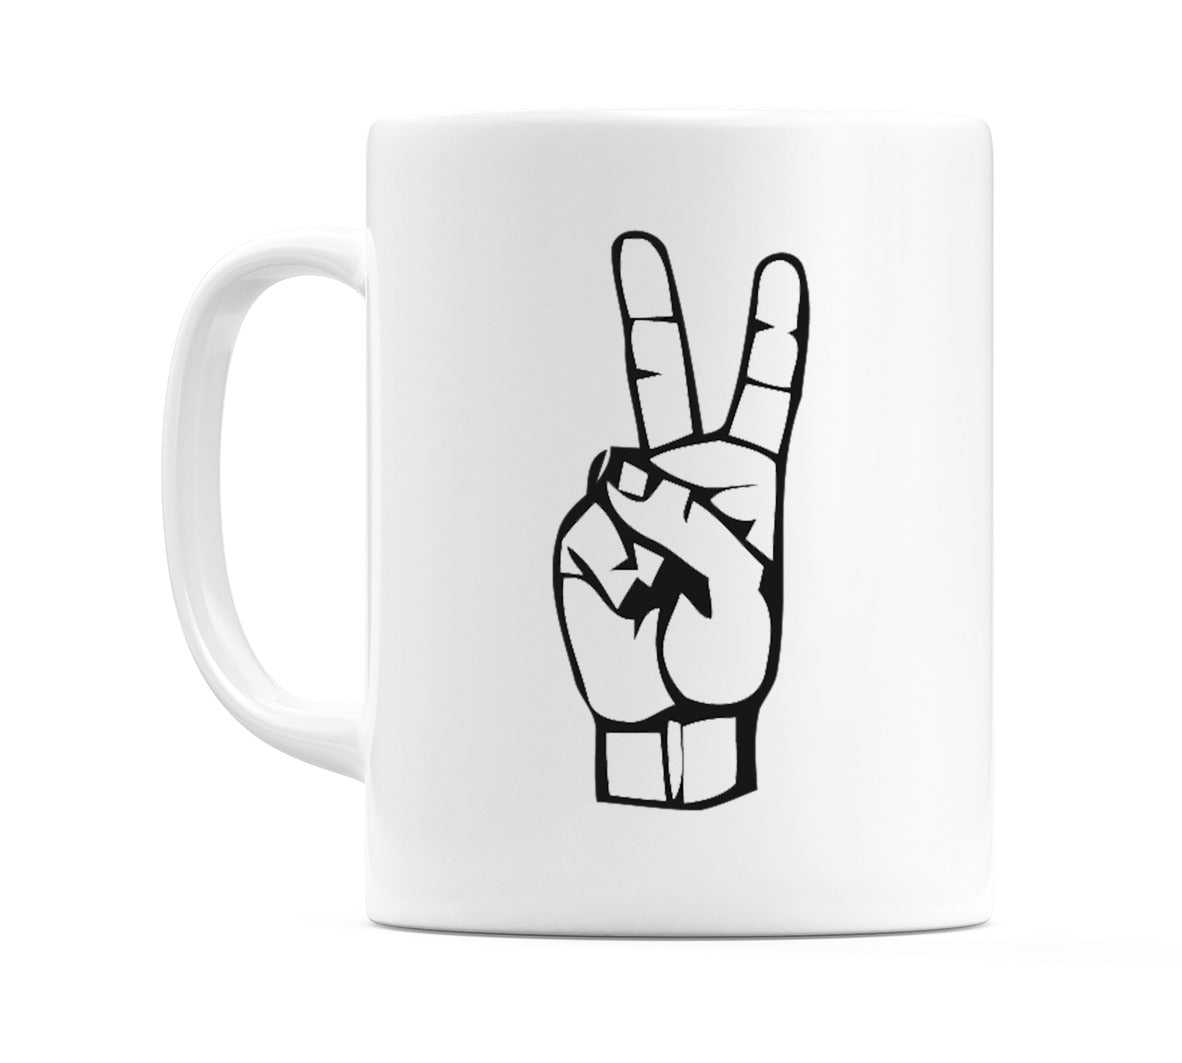 US Sign Language Number 2 Mug